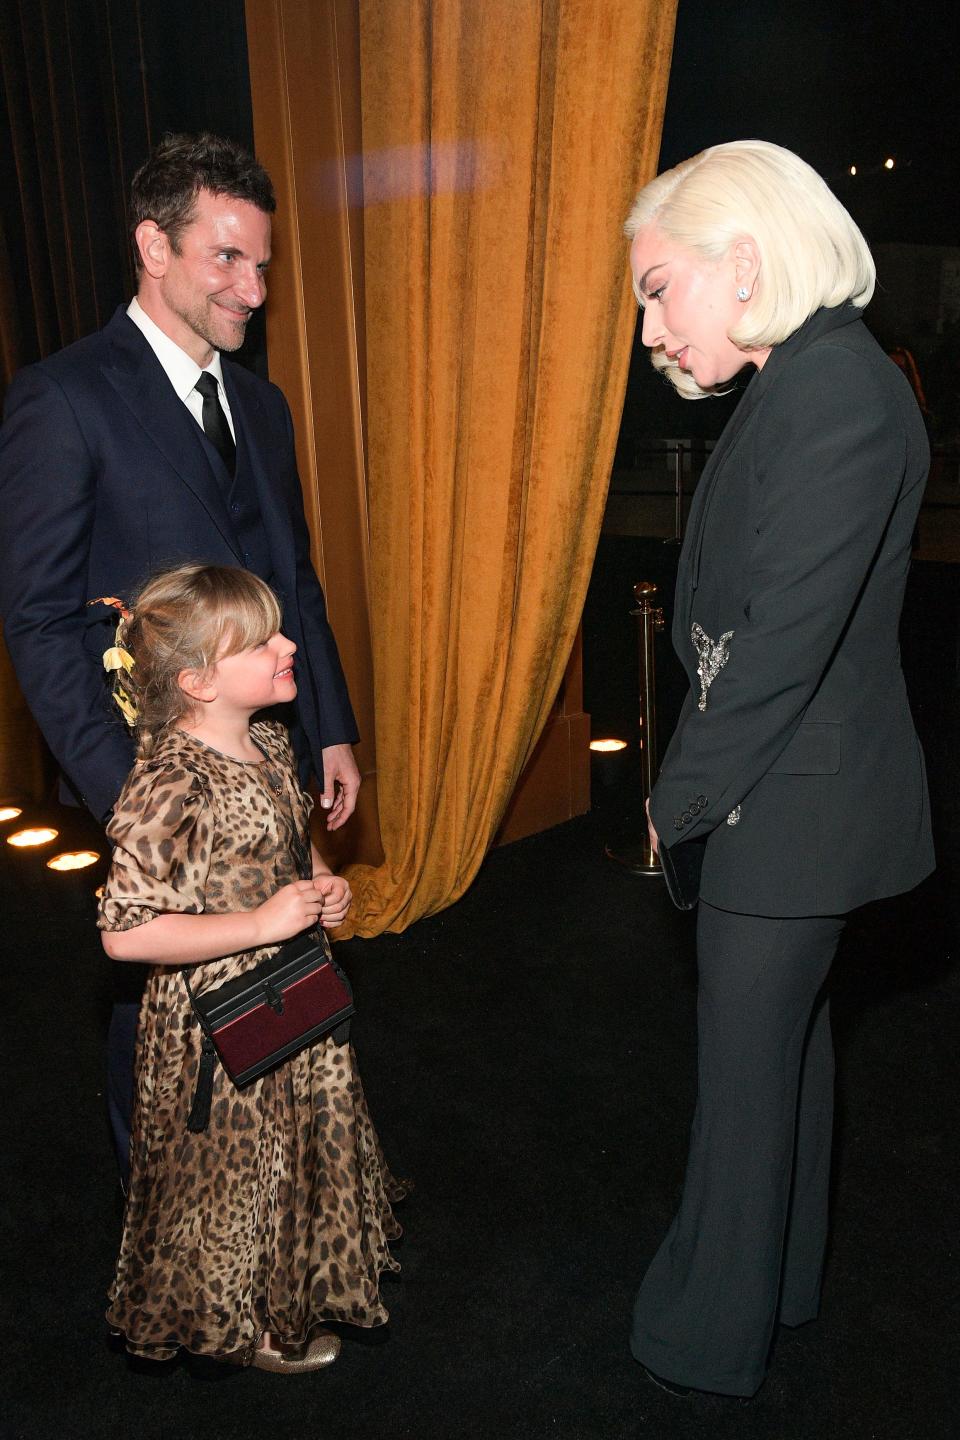 Lady Gaga, right, interacts with Cooper's daughter Lea De Seine, center.